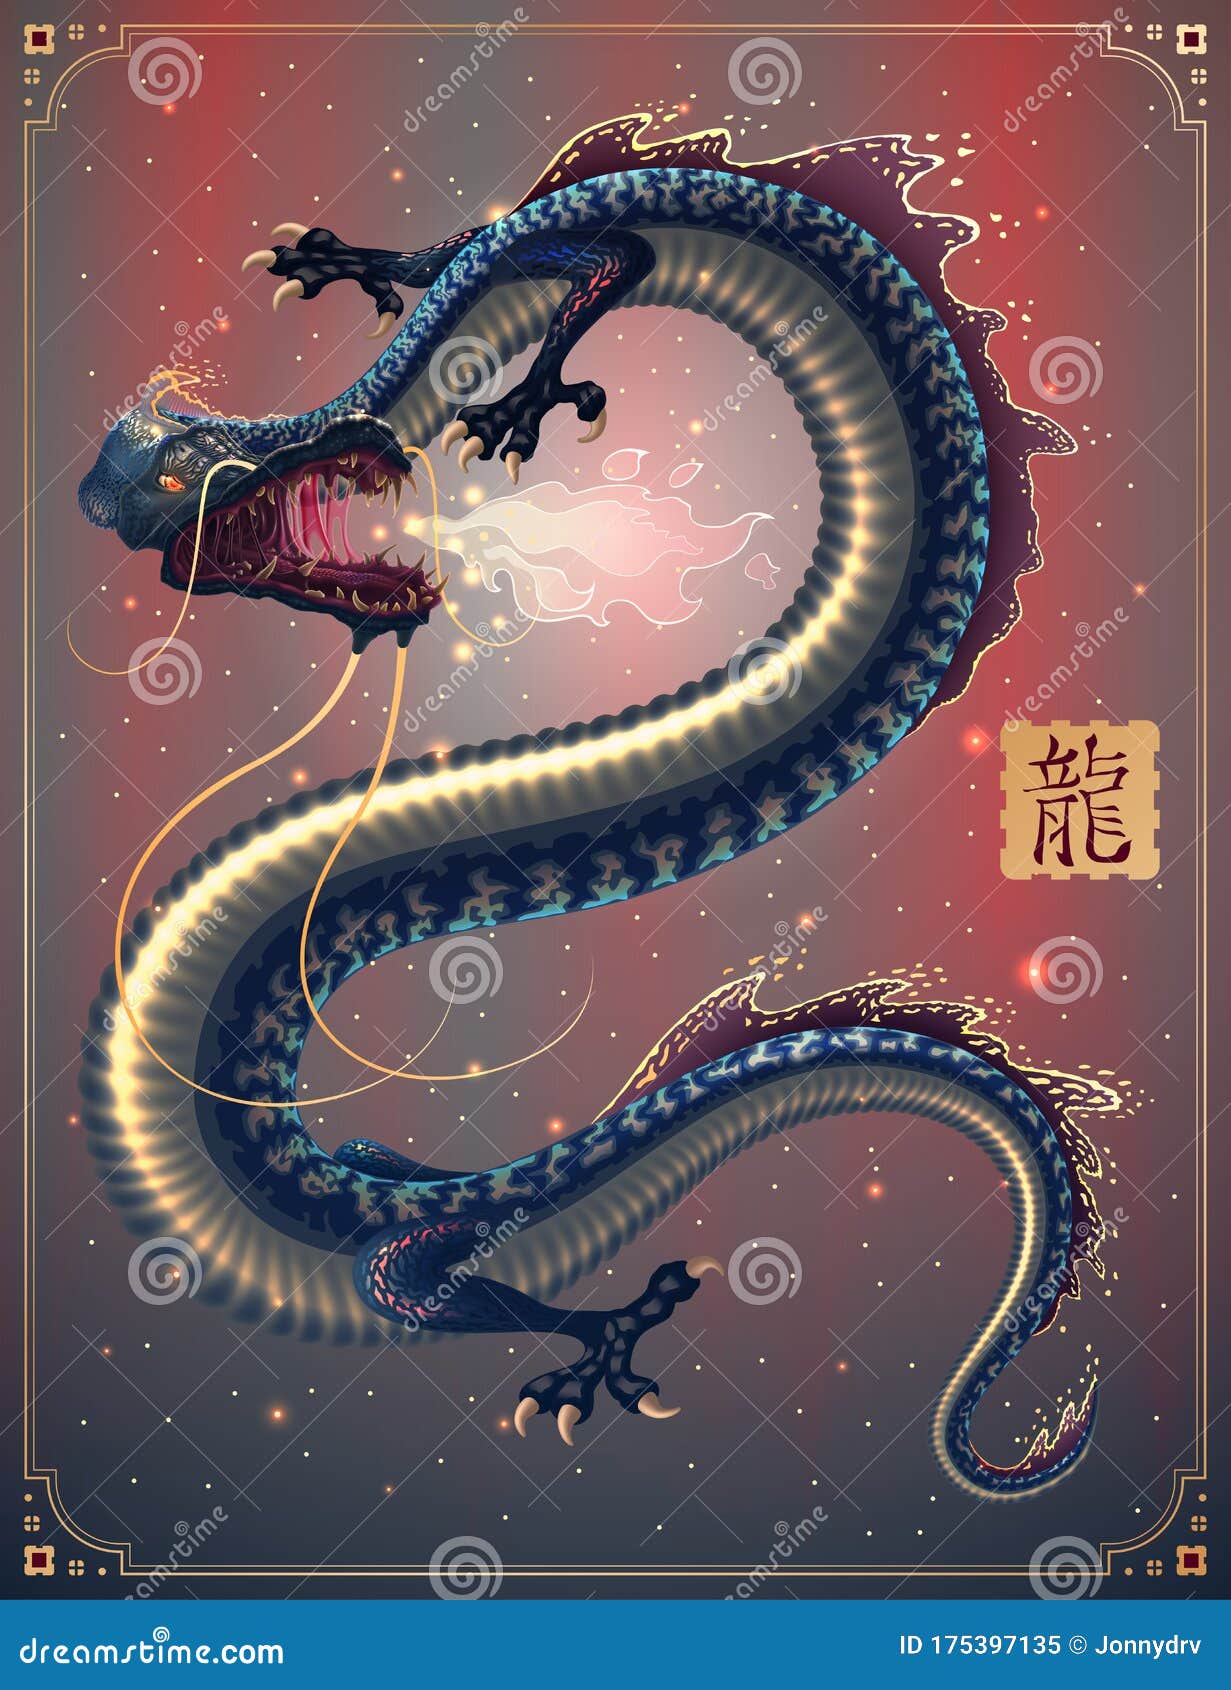 奇幻的日本龙或爬虫艺术 呼吸火龙的中国飞龙 矢量画中火影的蛇怪向量例证 插画包括有火焰 战斗